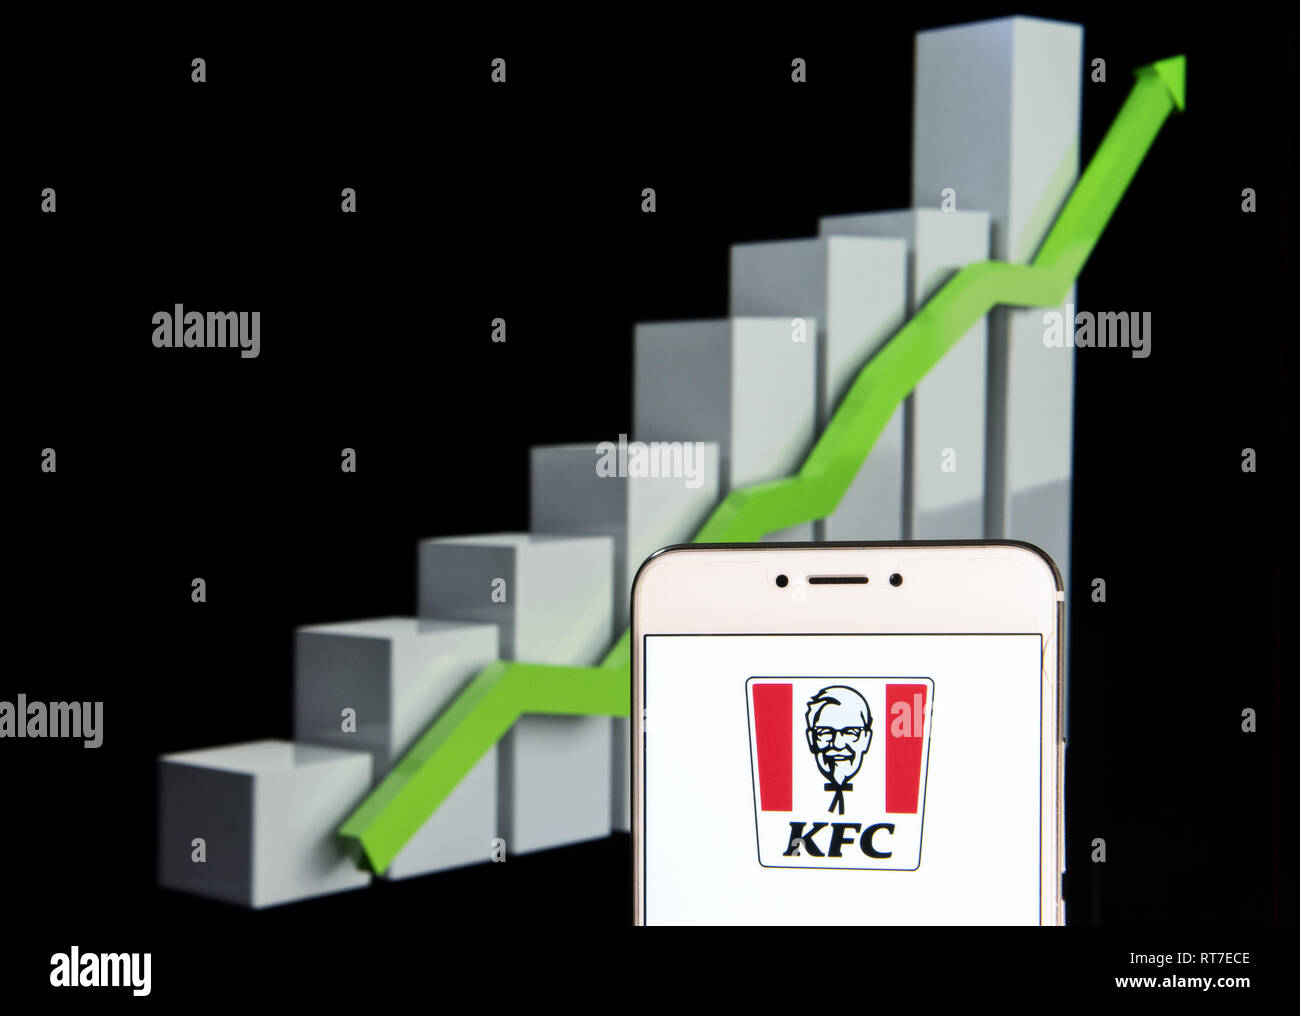 Kfc Stock Chart